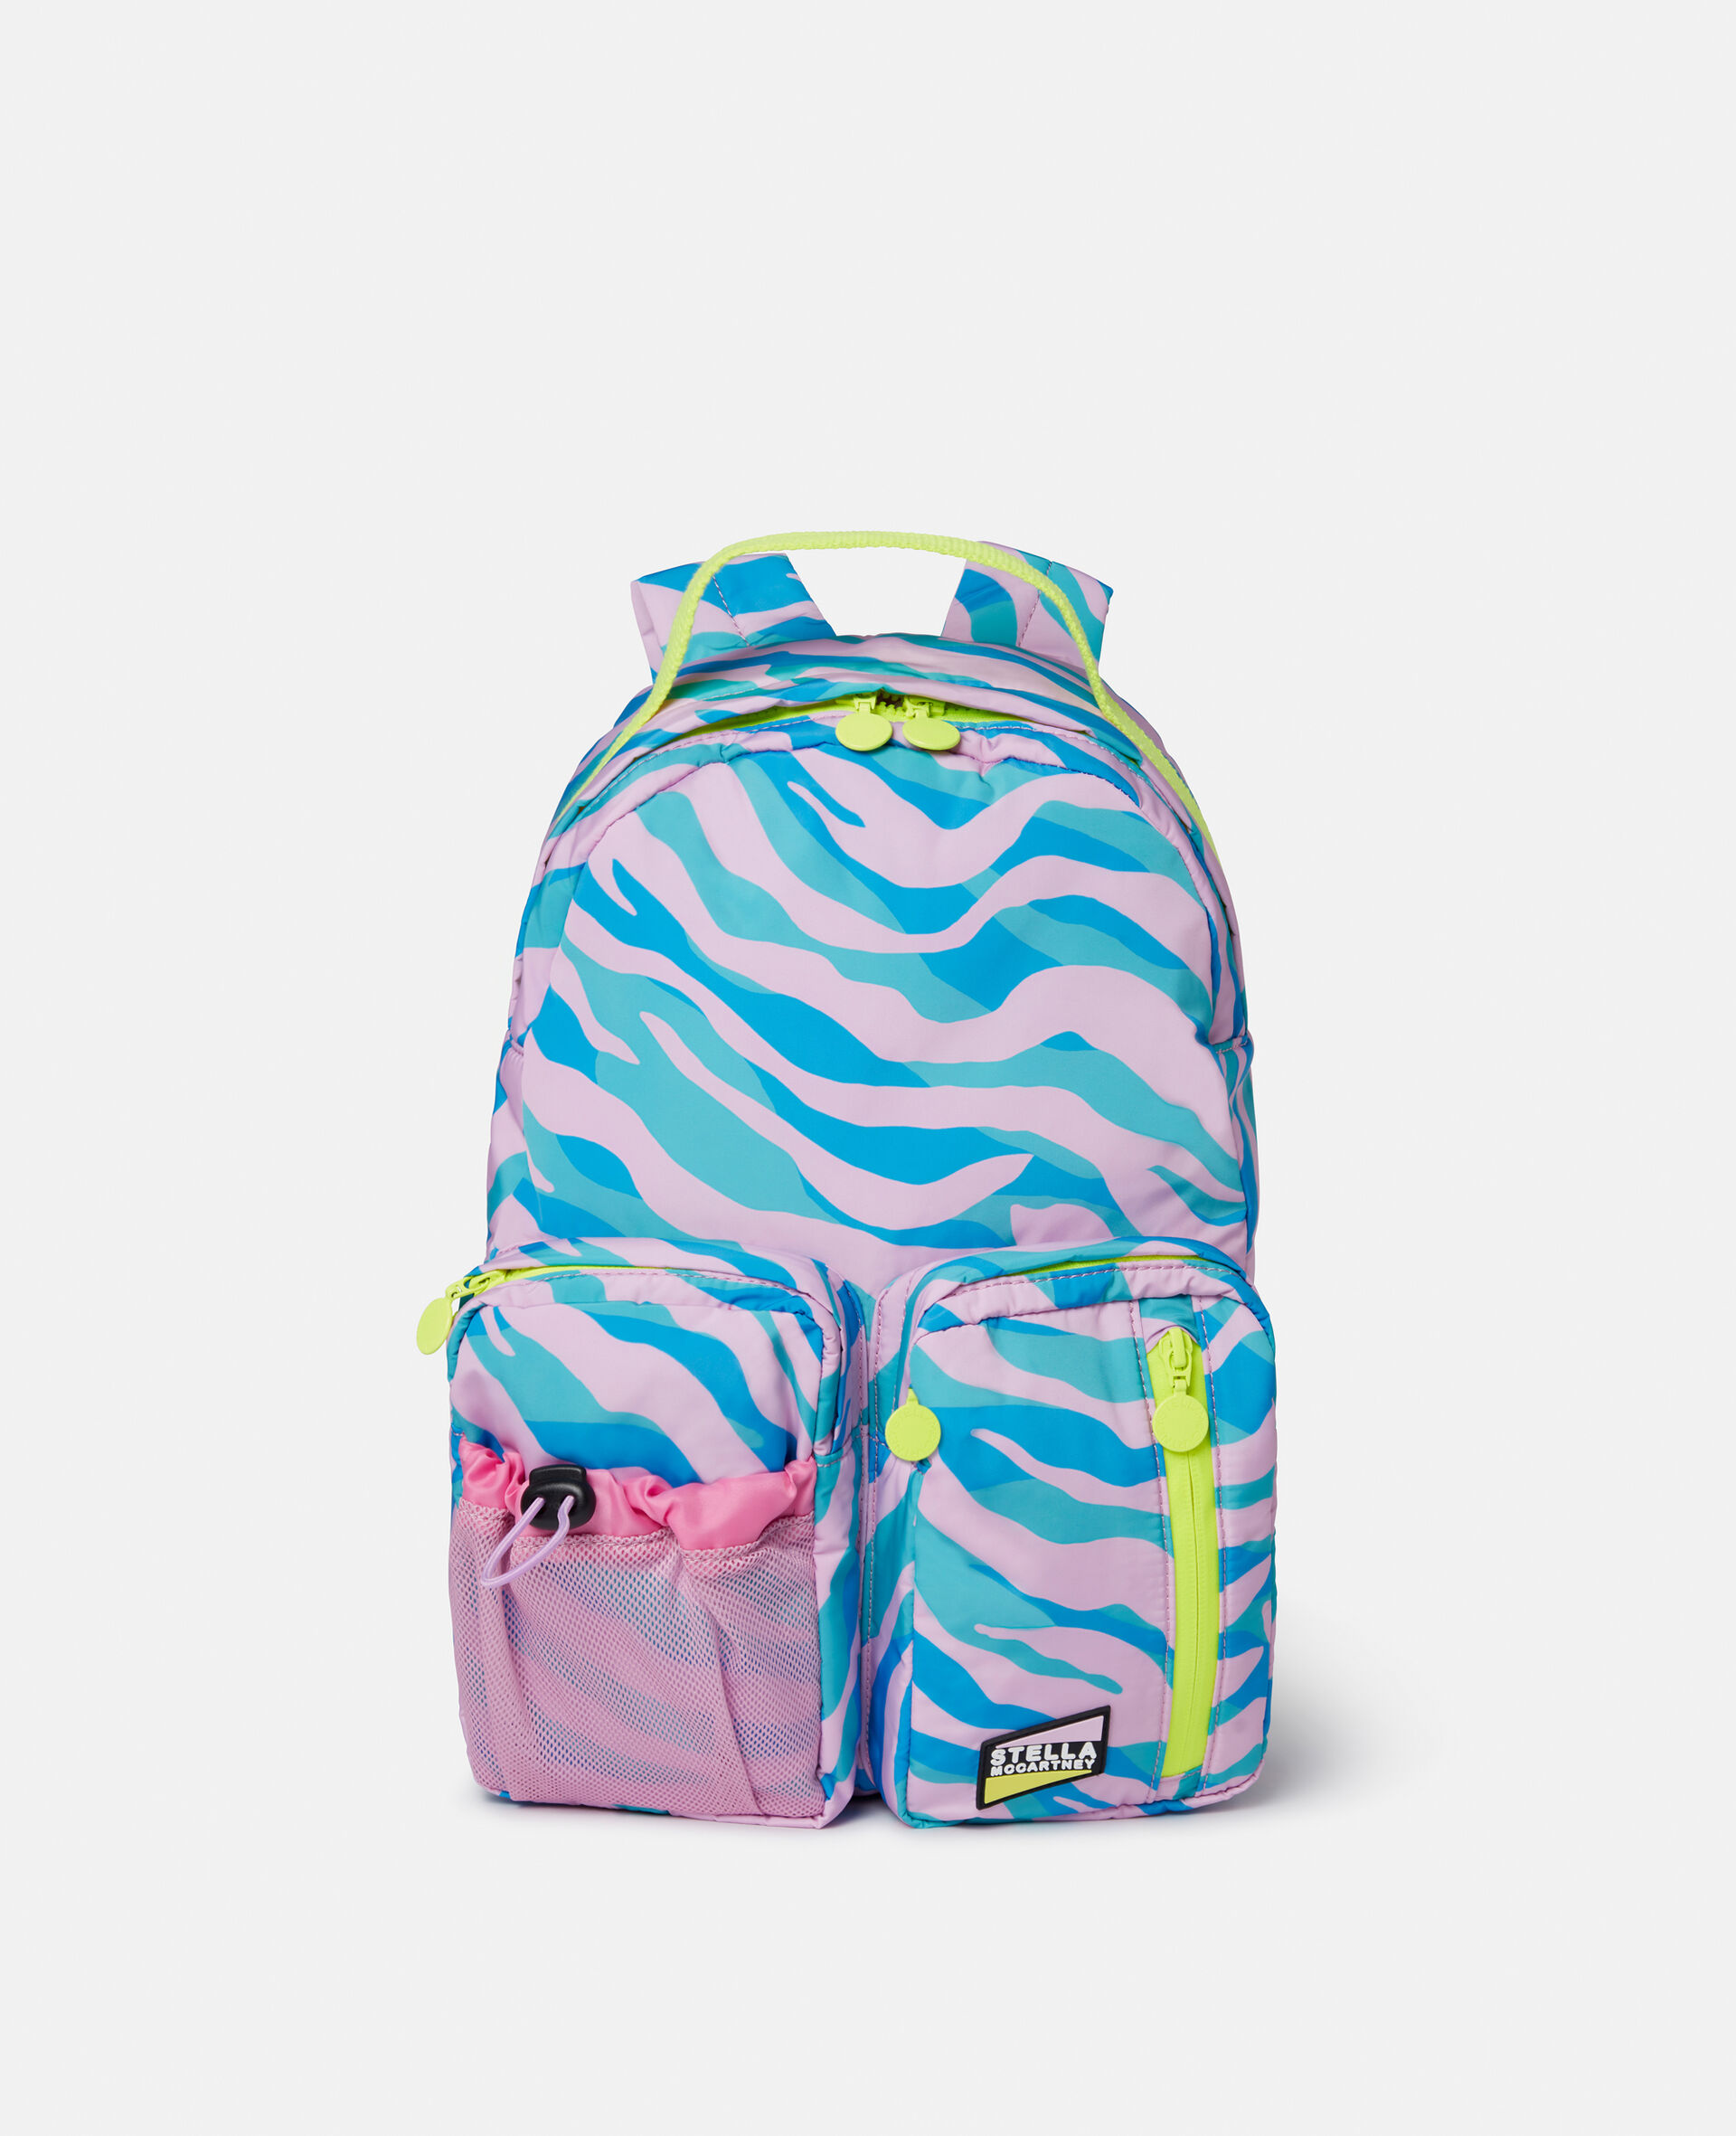 Zebra Print Backpack-Multicolour-large image number 0